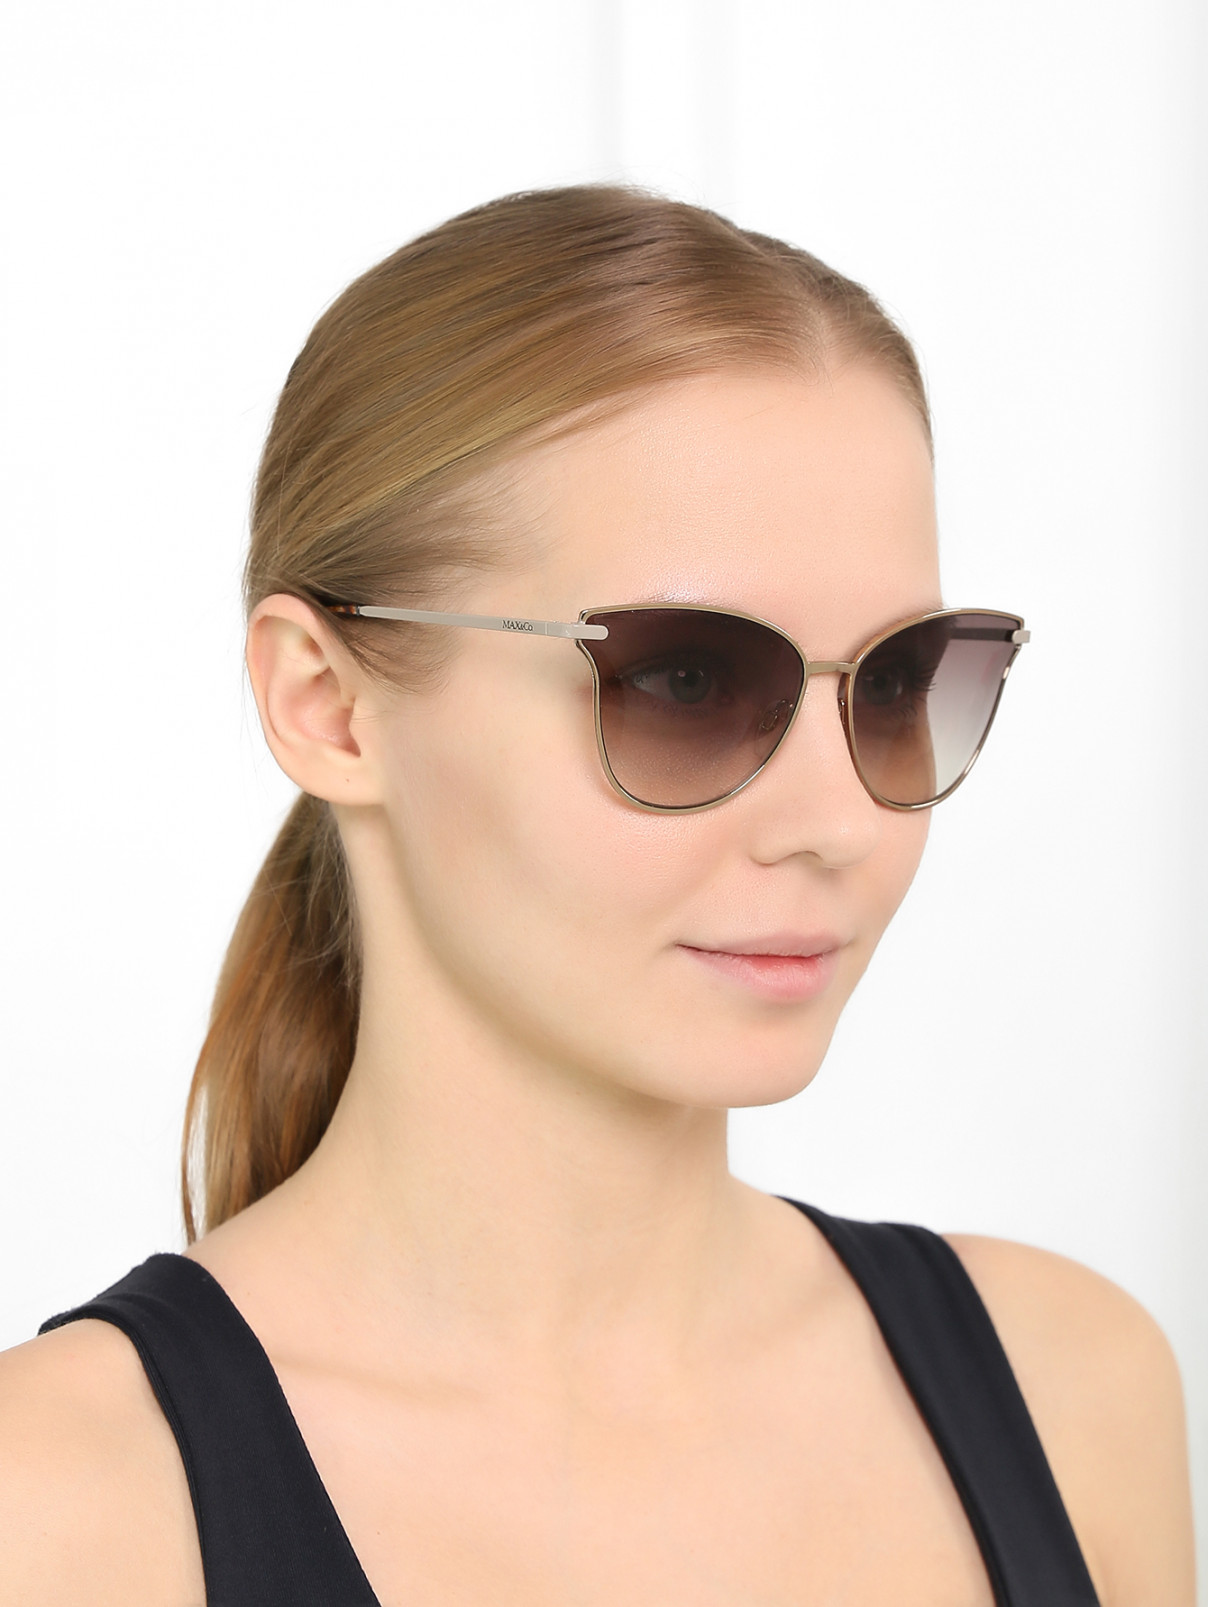 Солнцезащитные очки в металлической оправе Max&Co  –  Модель Общий вид  – Цвет:  Коричневый